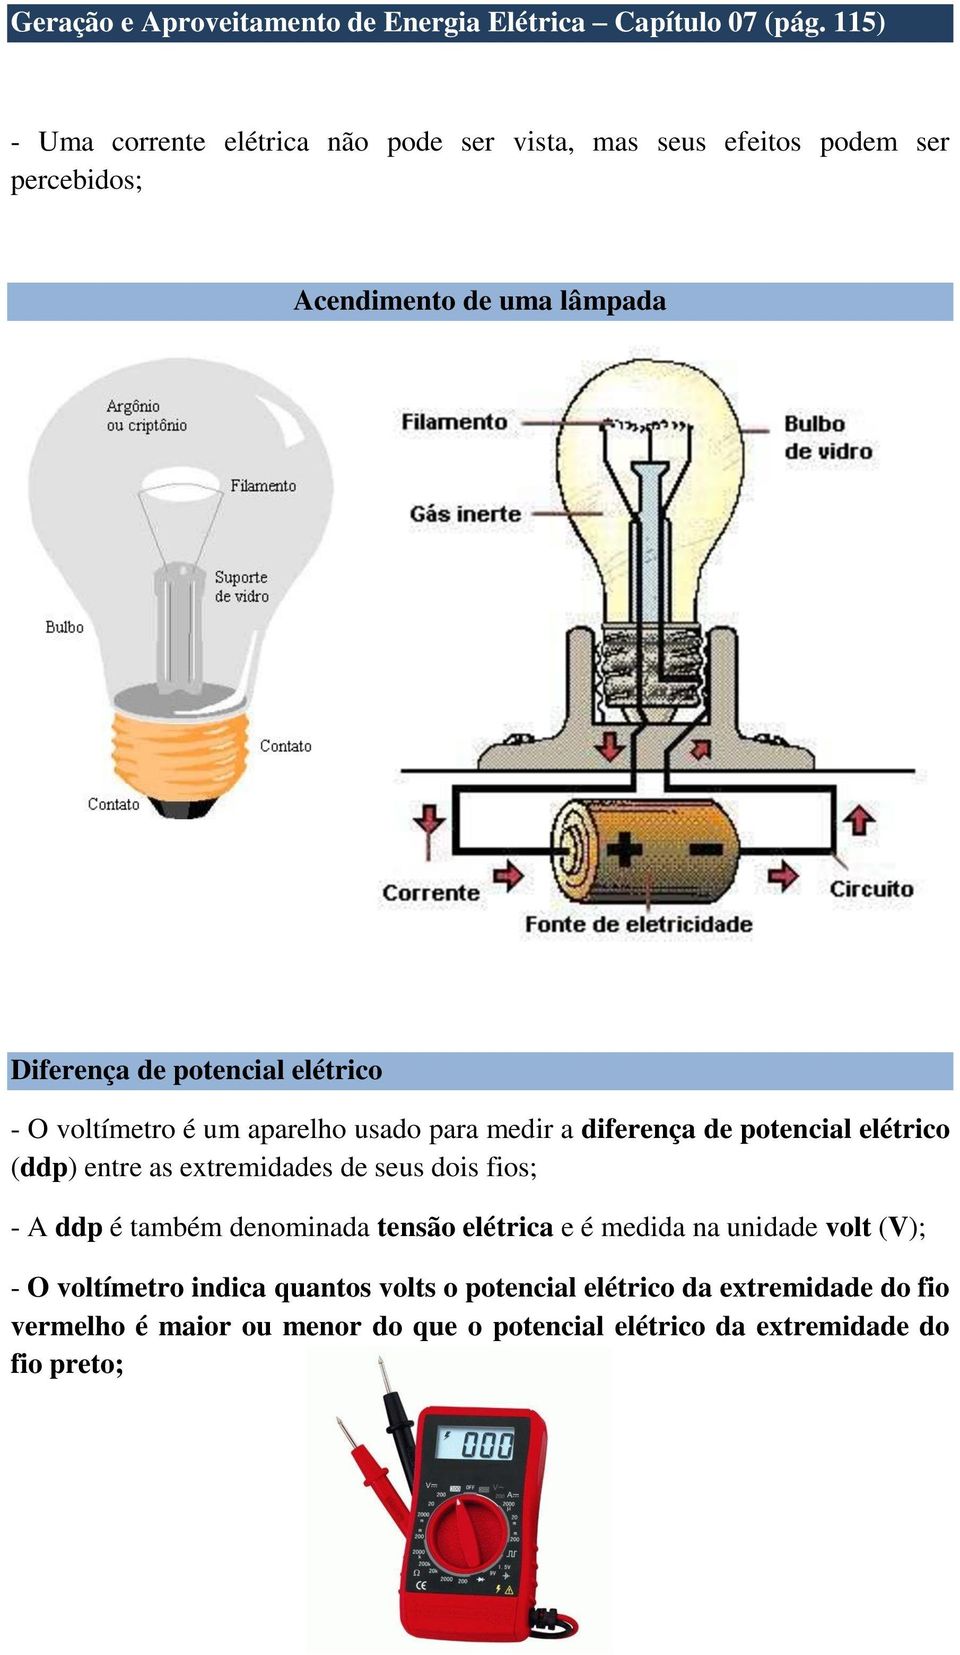 elétrico - O voltímetro é um aparelho usado para medir a diferença de potencial elétrico (ddp) entre as extremidades de seus dois fios; - A ddp